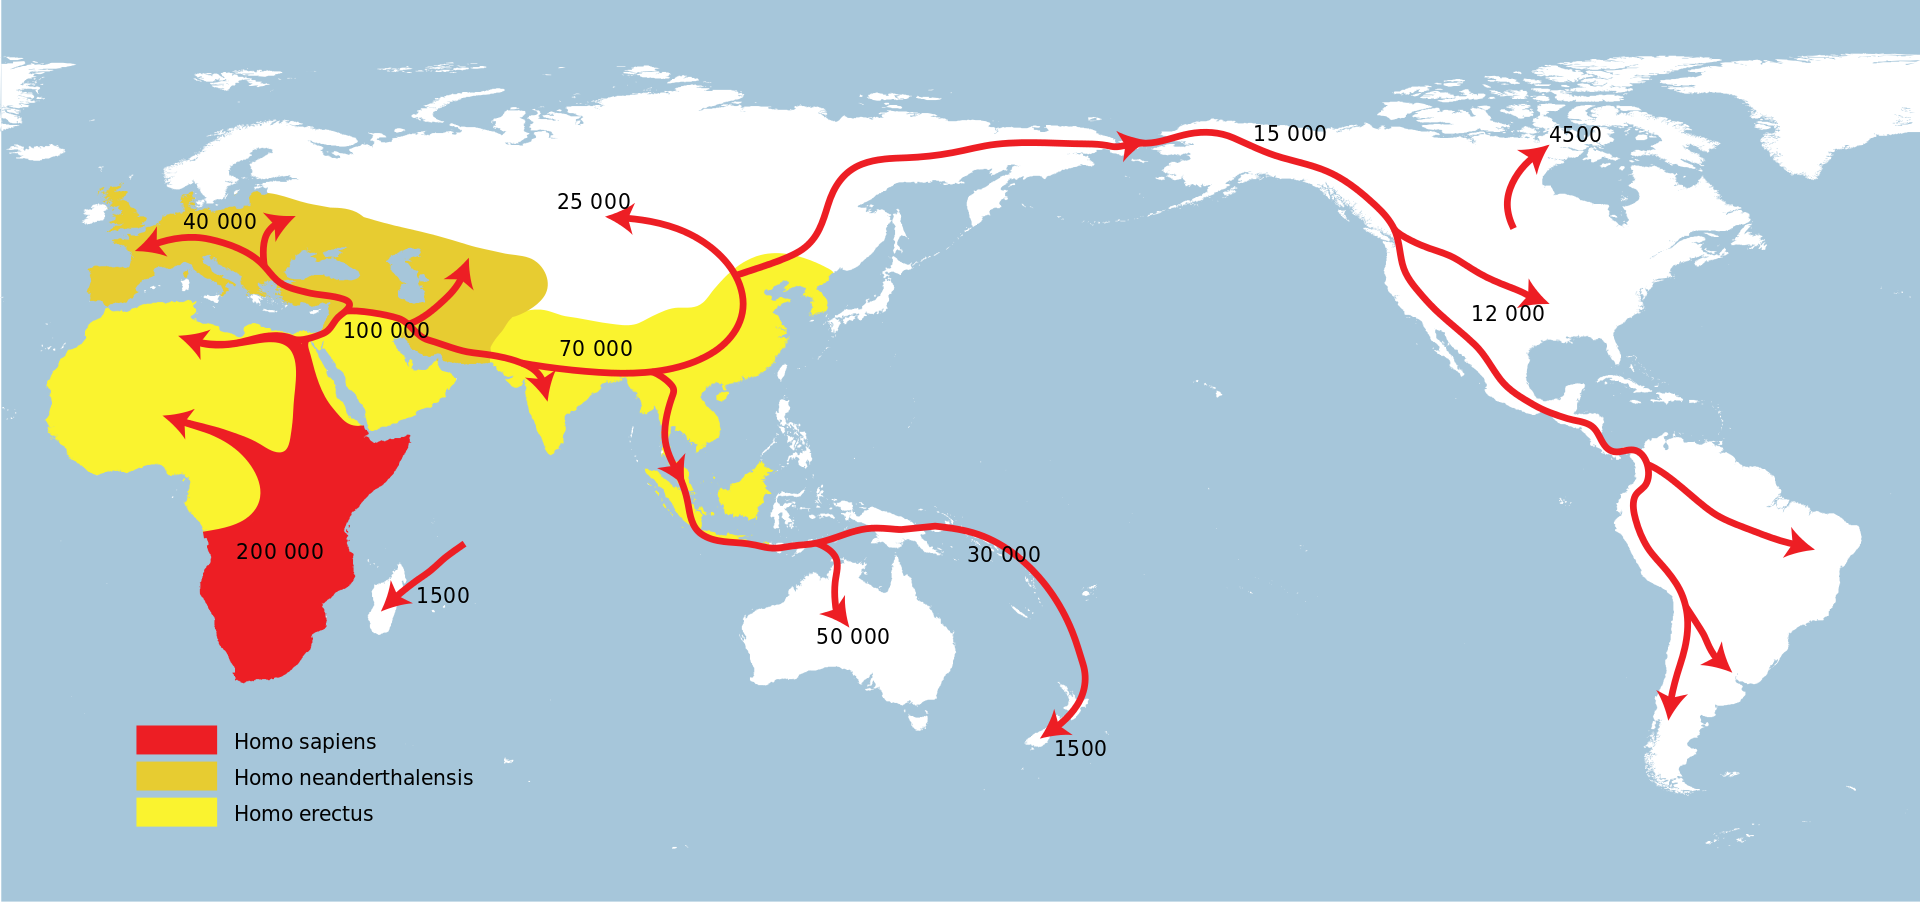 Mapa de las primeras migraciones humanas en función de la Teoría de la Emigración Africana.